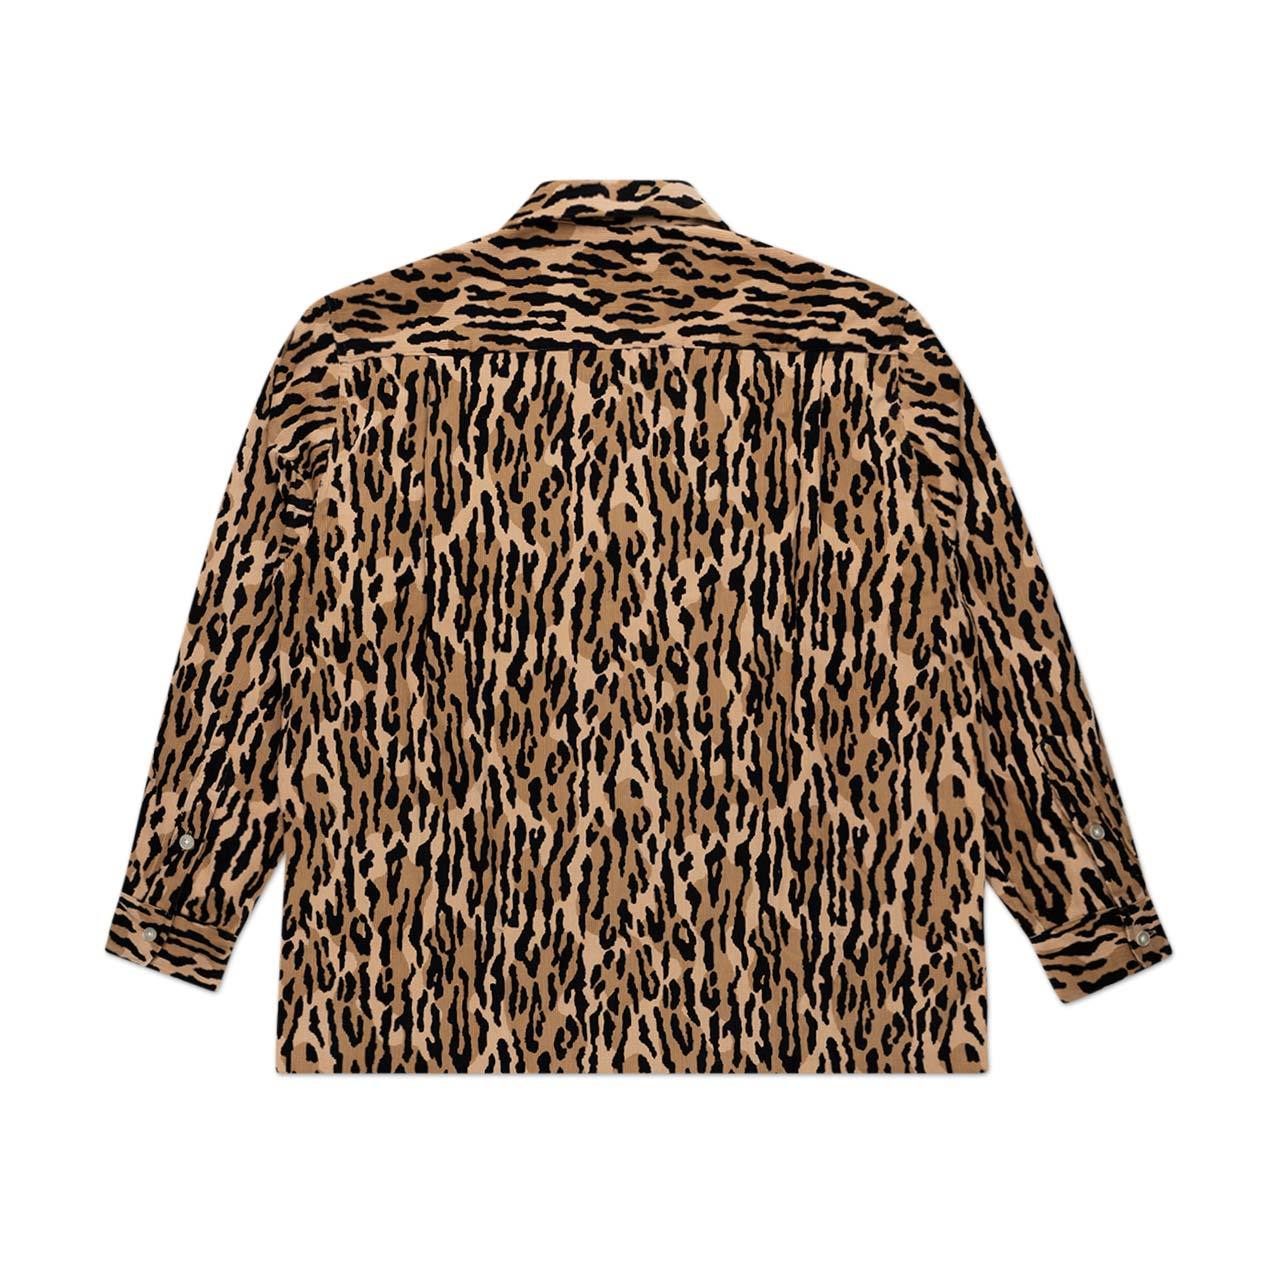 wacko maria wacko maria corduroy open collar shirt (leopard)